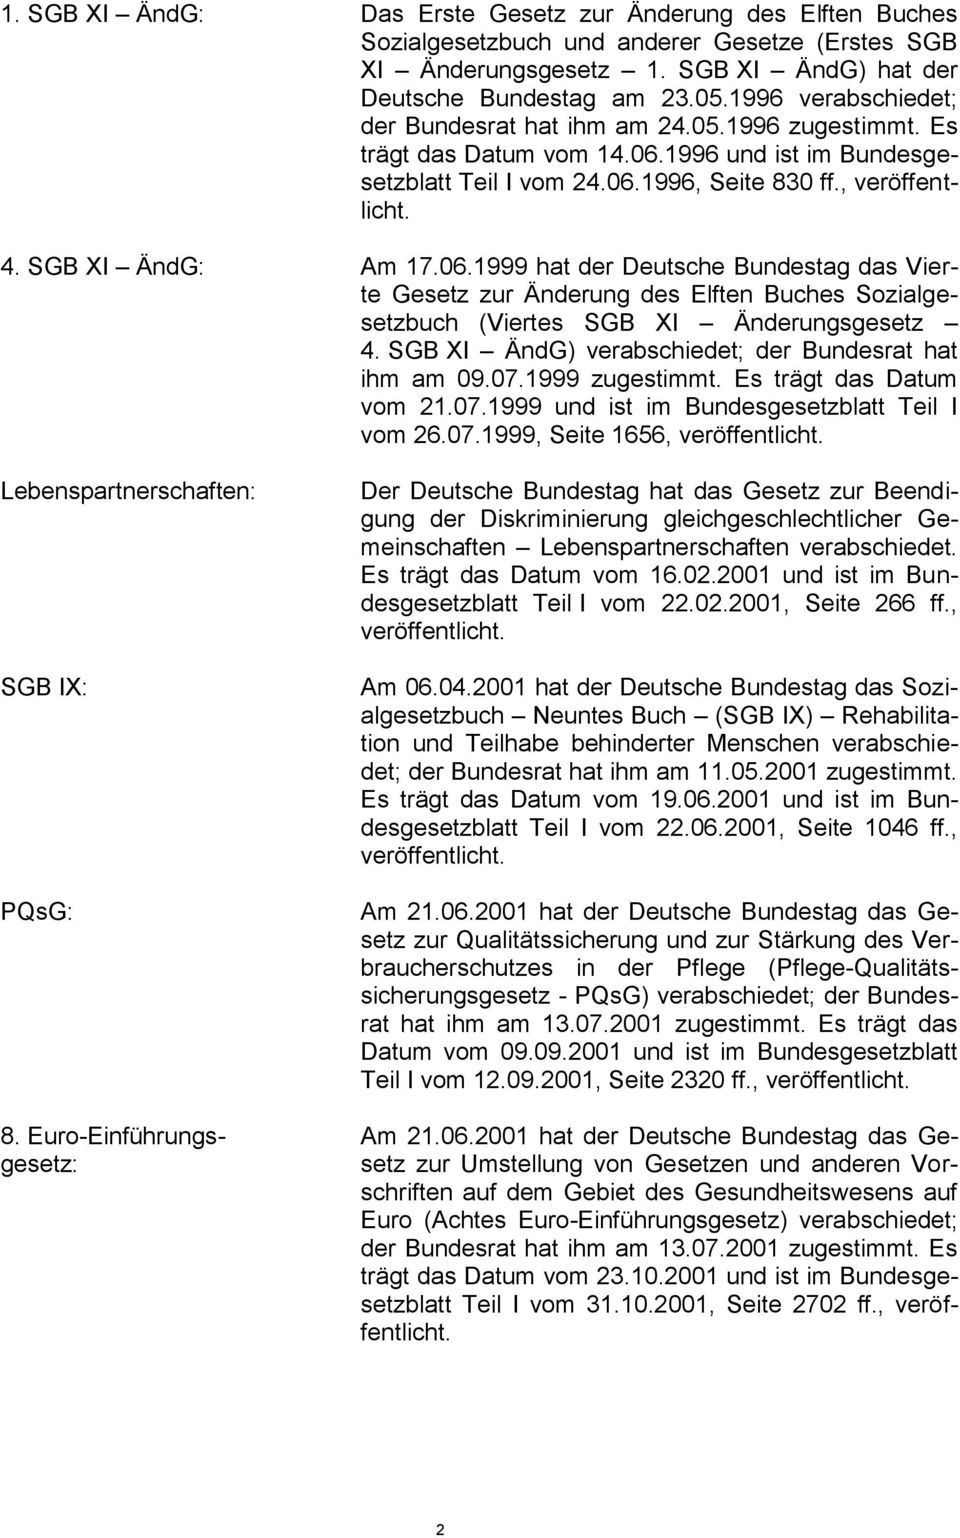 SGB XI ÄndG: Am 17.06.1999 hat der Deutsche Bundestag das Vierte Gesetz zur Änderung des Elften Buches Sozialgesetzbuch (Viertes SGB XI Änderungsgesetz 4.